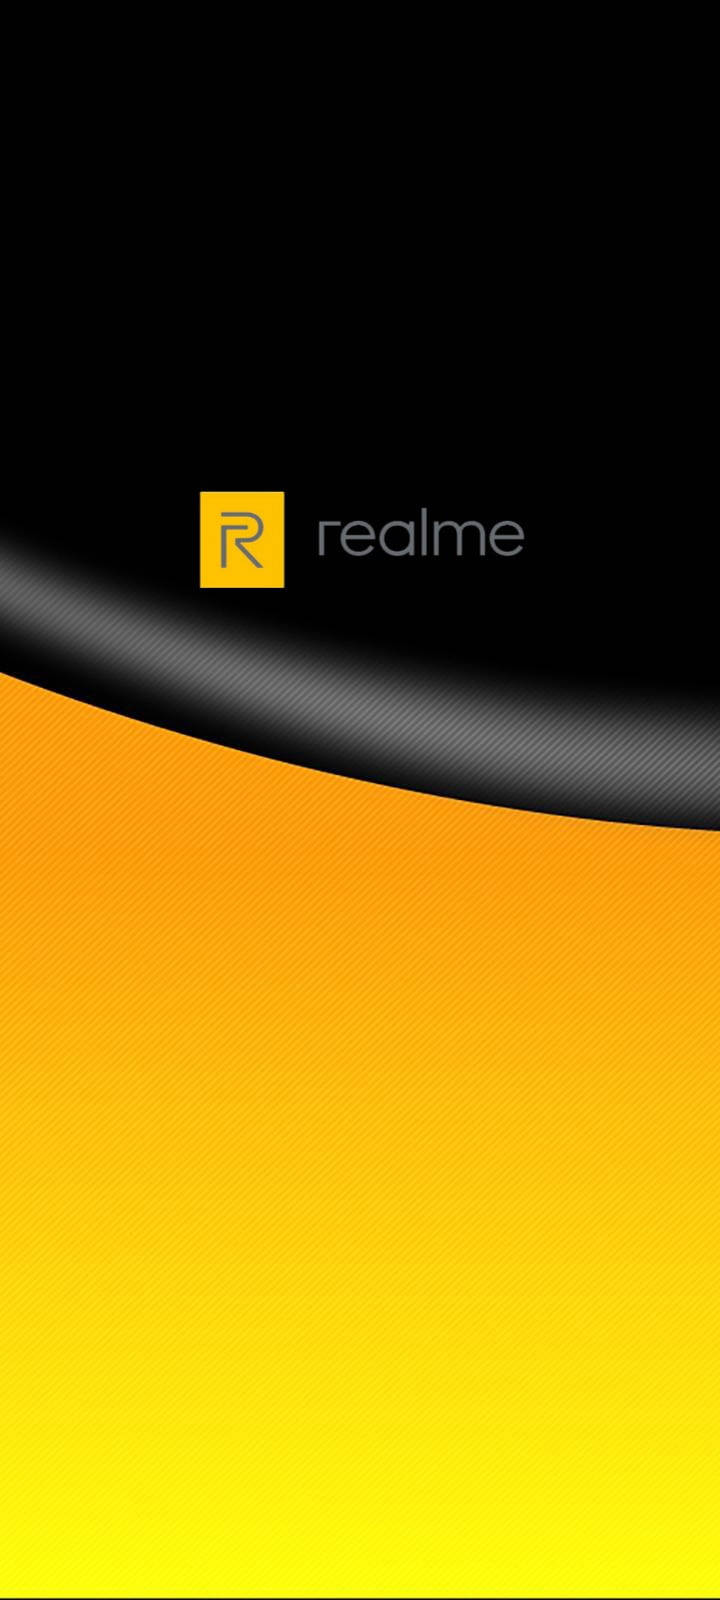 Logotipode Realme En Negro Y Amarillo. Fondo de pantalla